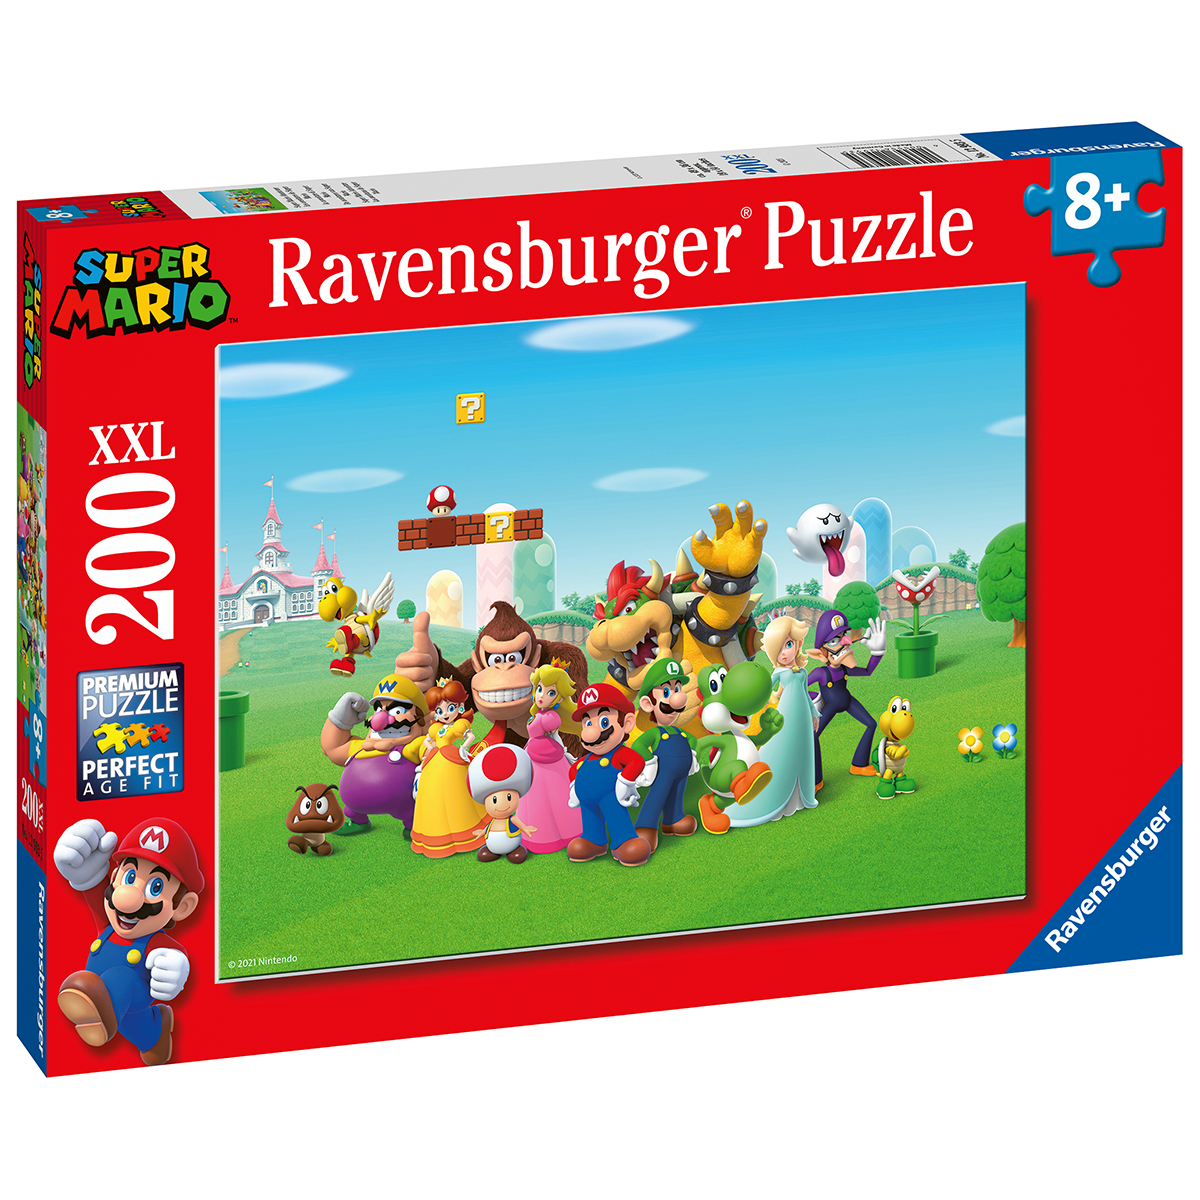 Ravensburger puzzle 200 pezzi - super mario - RAVENSBURGER, Super Mario